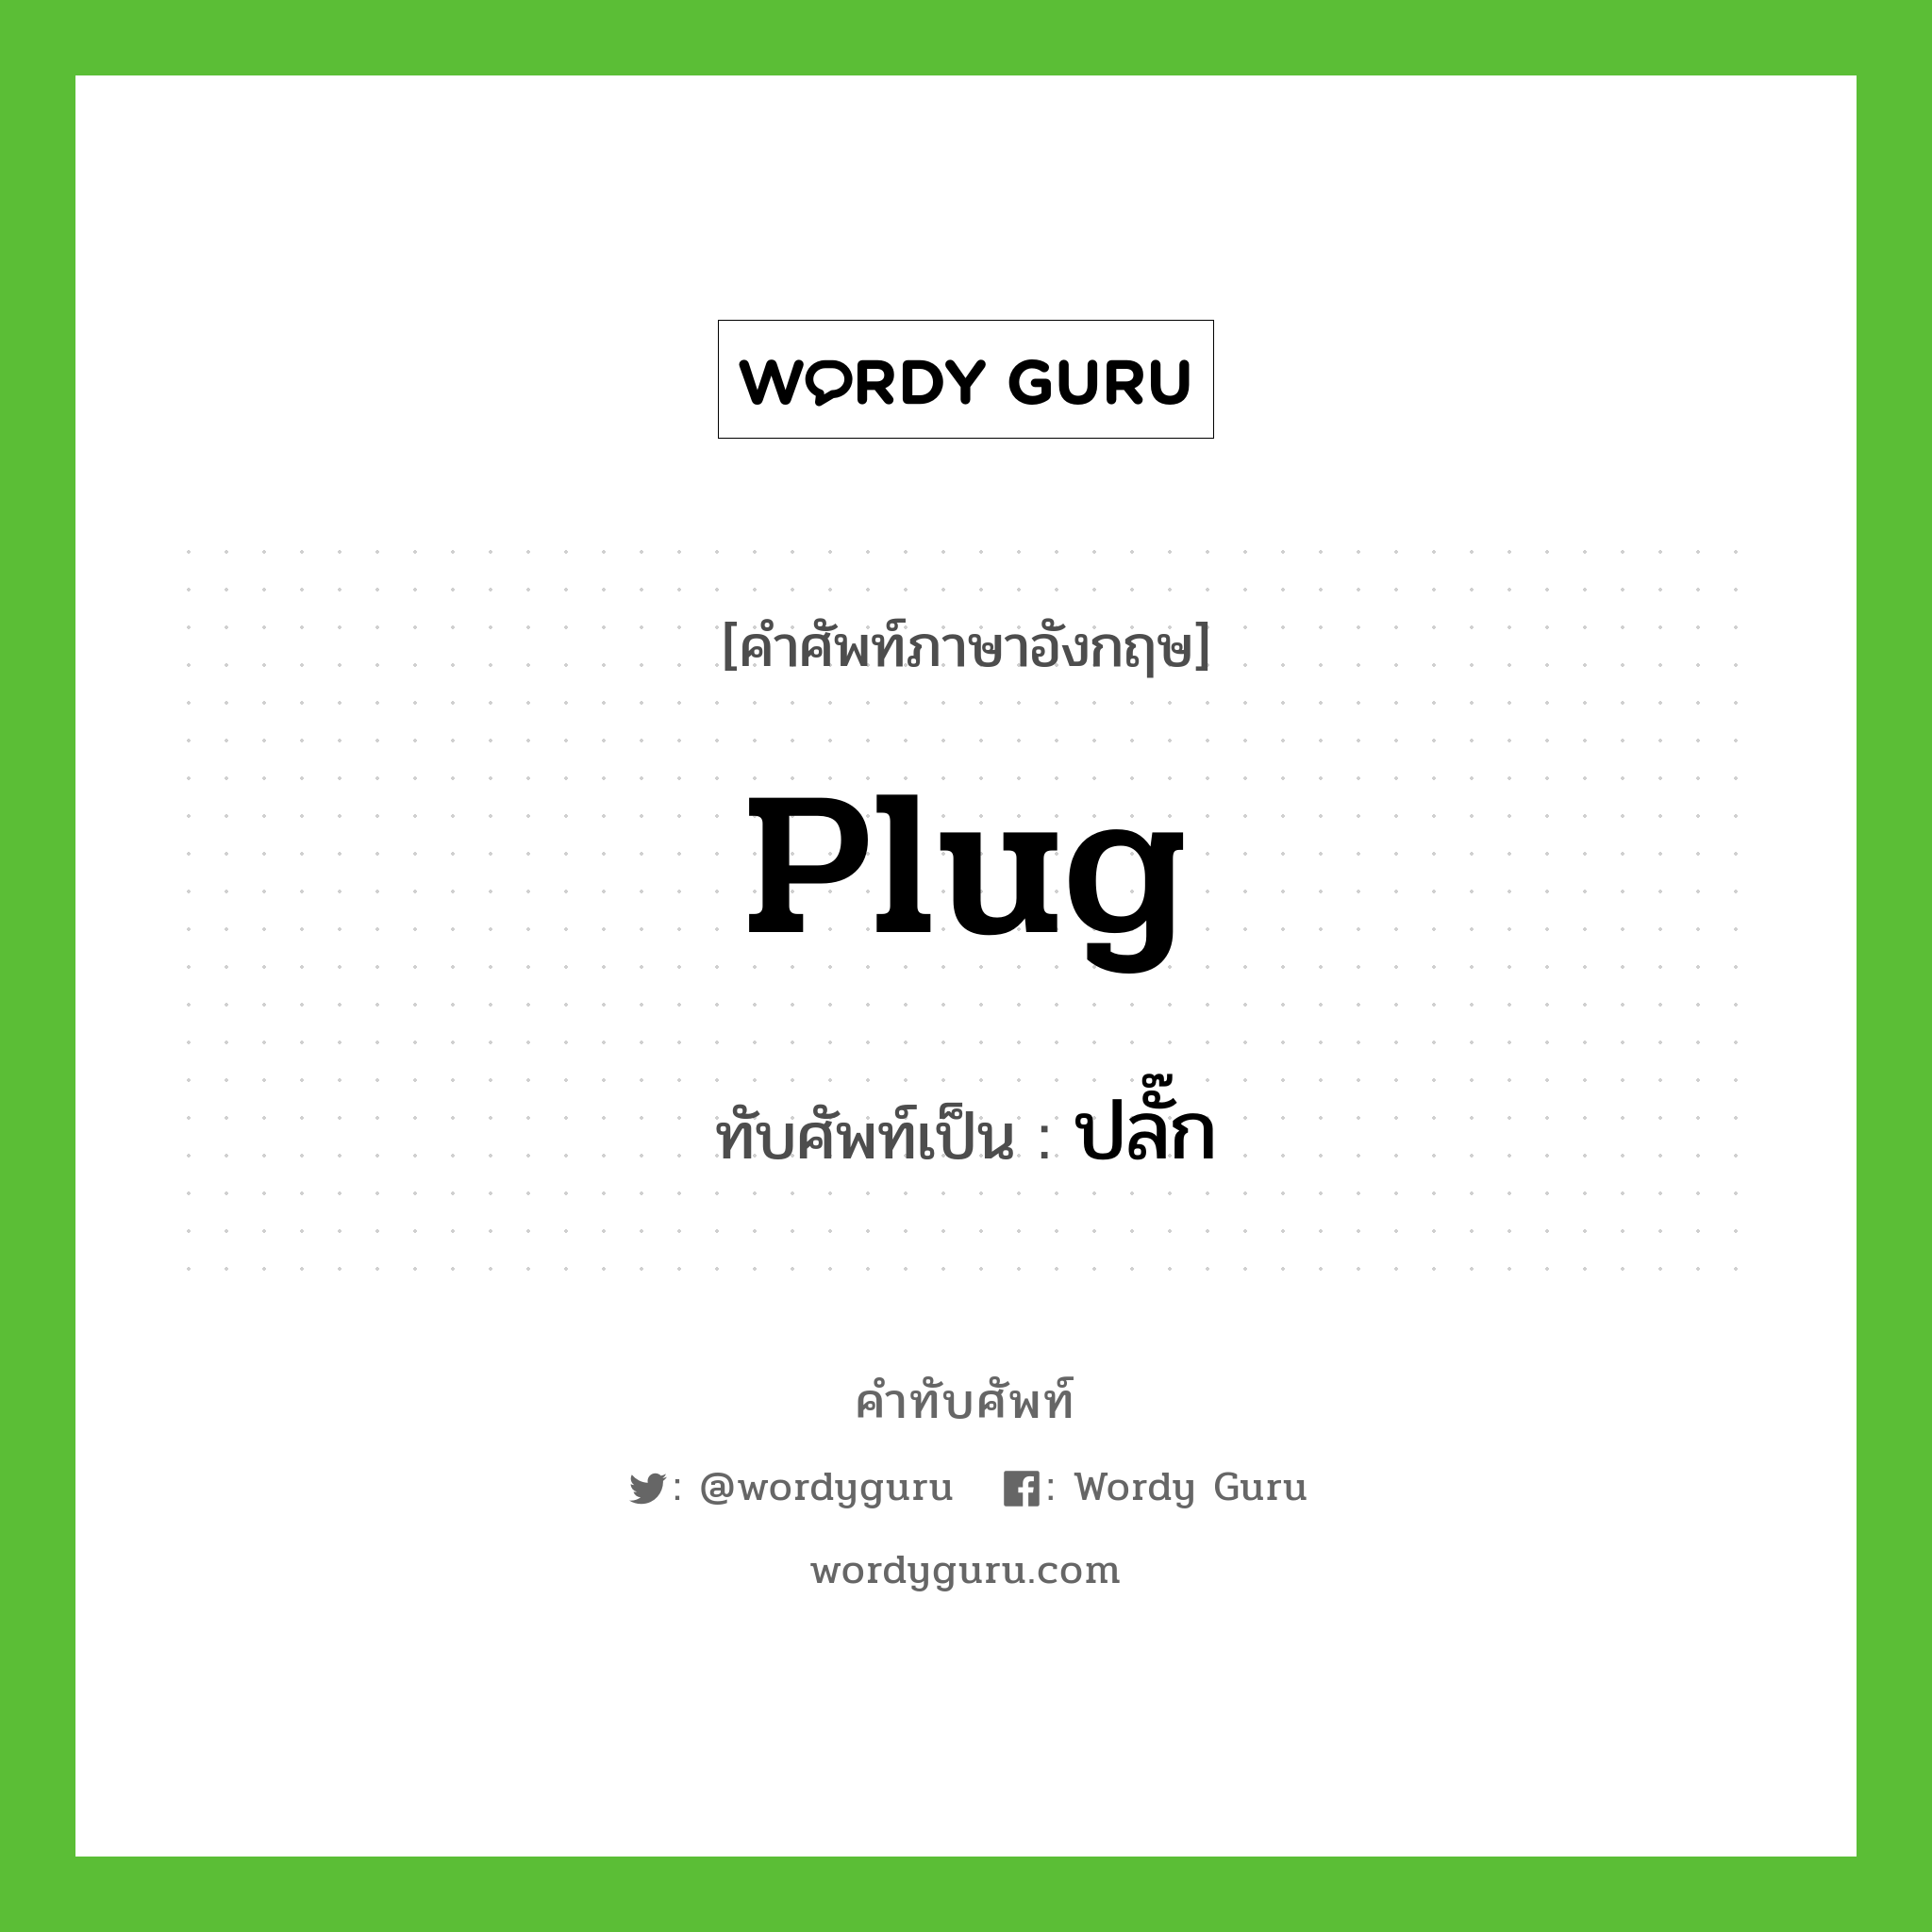 plug เขียนเป็นคำไทยว่าอะไร?, คำศัพท์ภาษาอังกฤษ plug ทับศัพท์เป็น ปลั๊ก